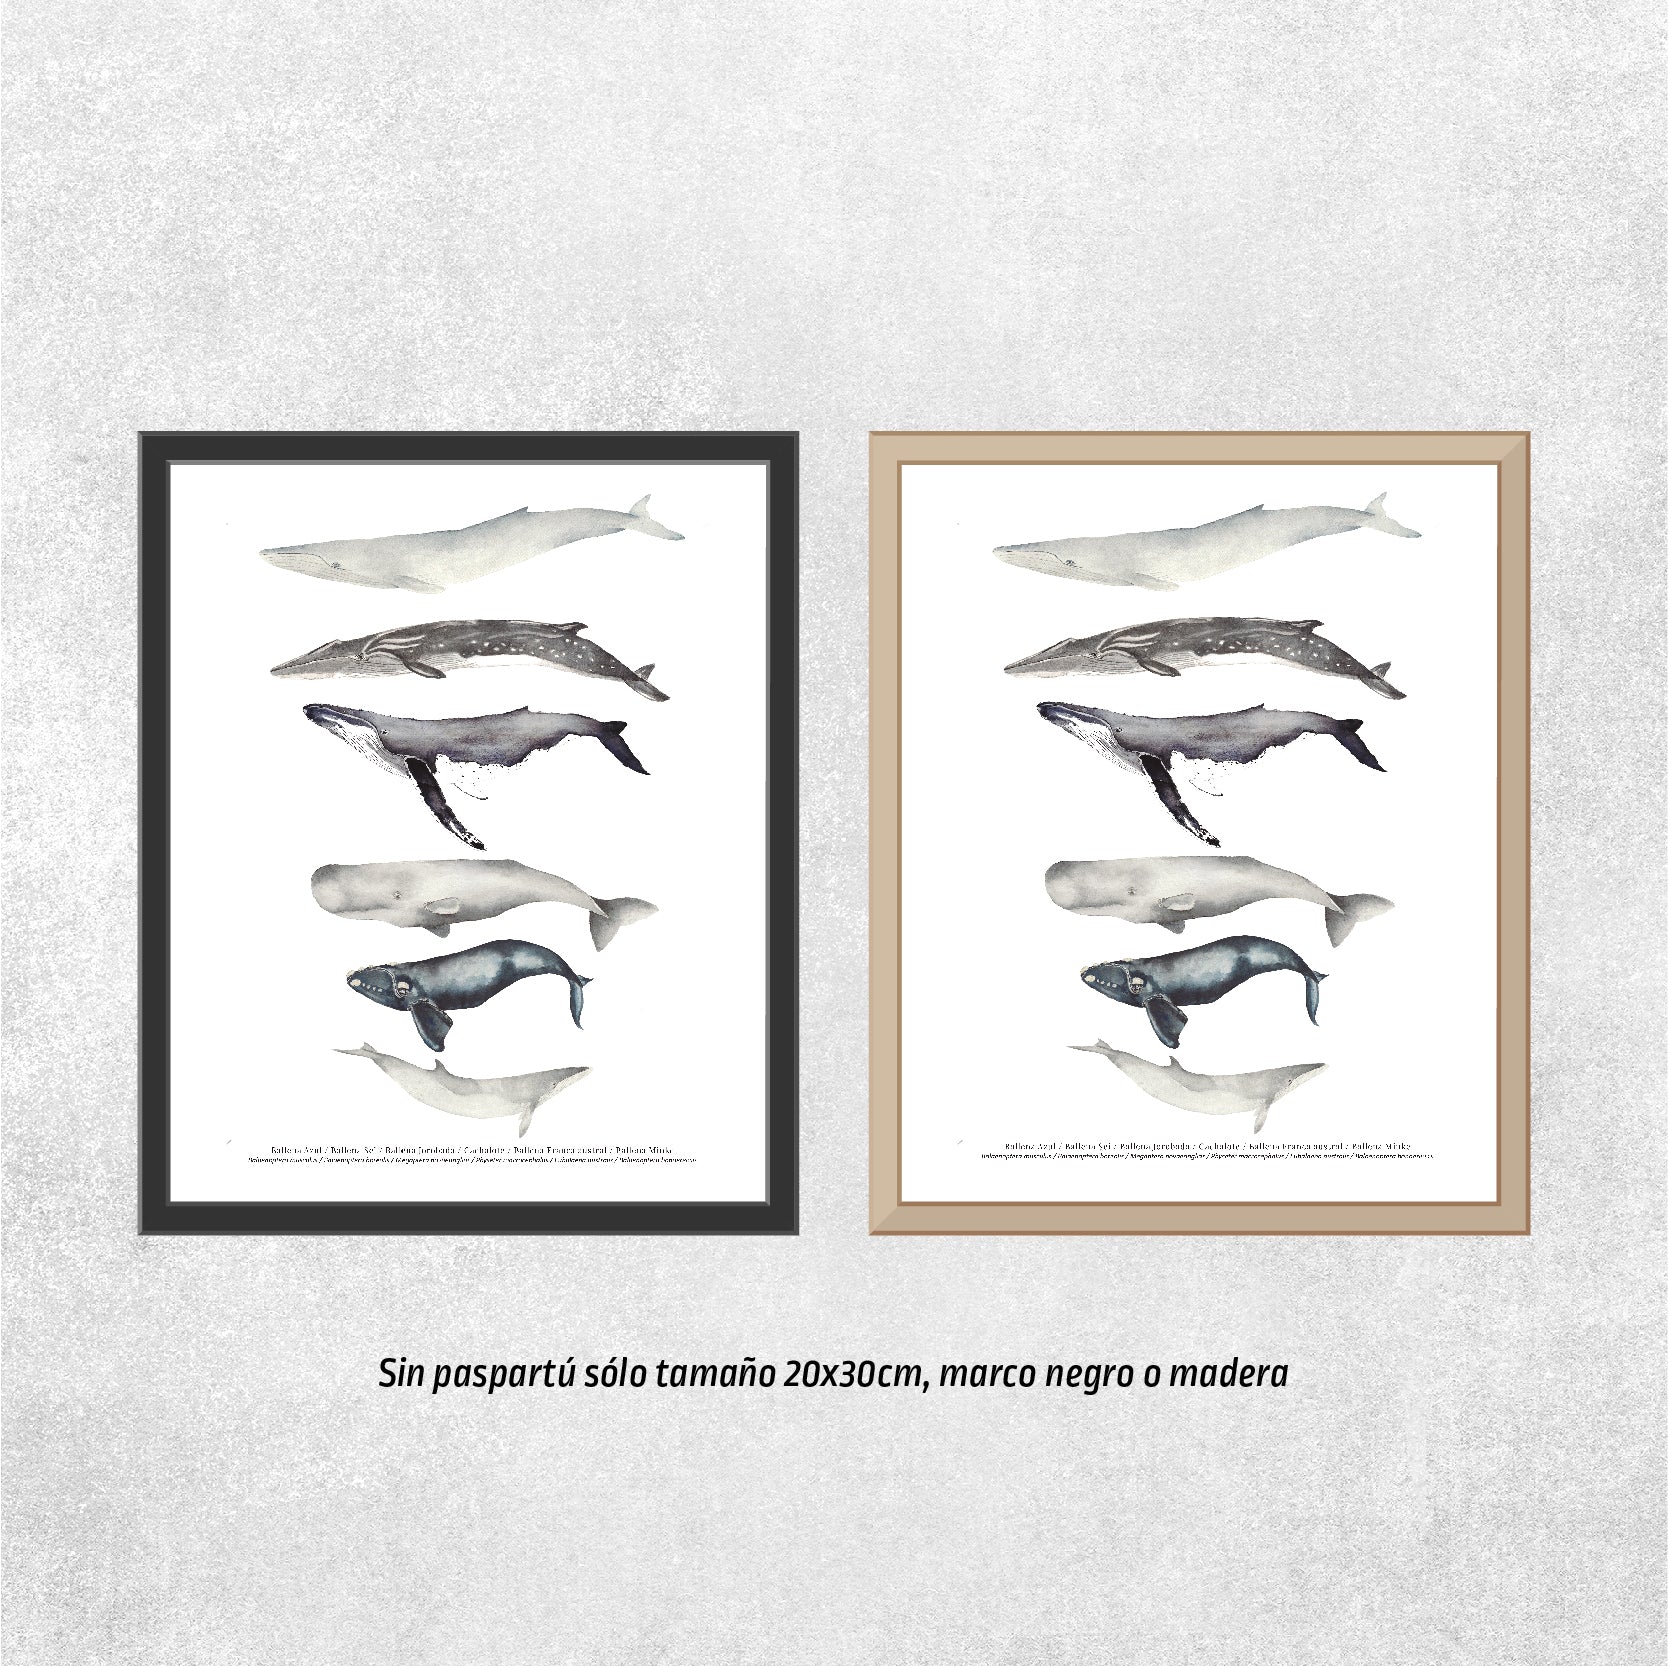 Reproducción de una ilustración en acuarela marina de ballenas y cetáceos con o sin marco.